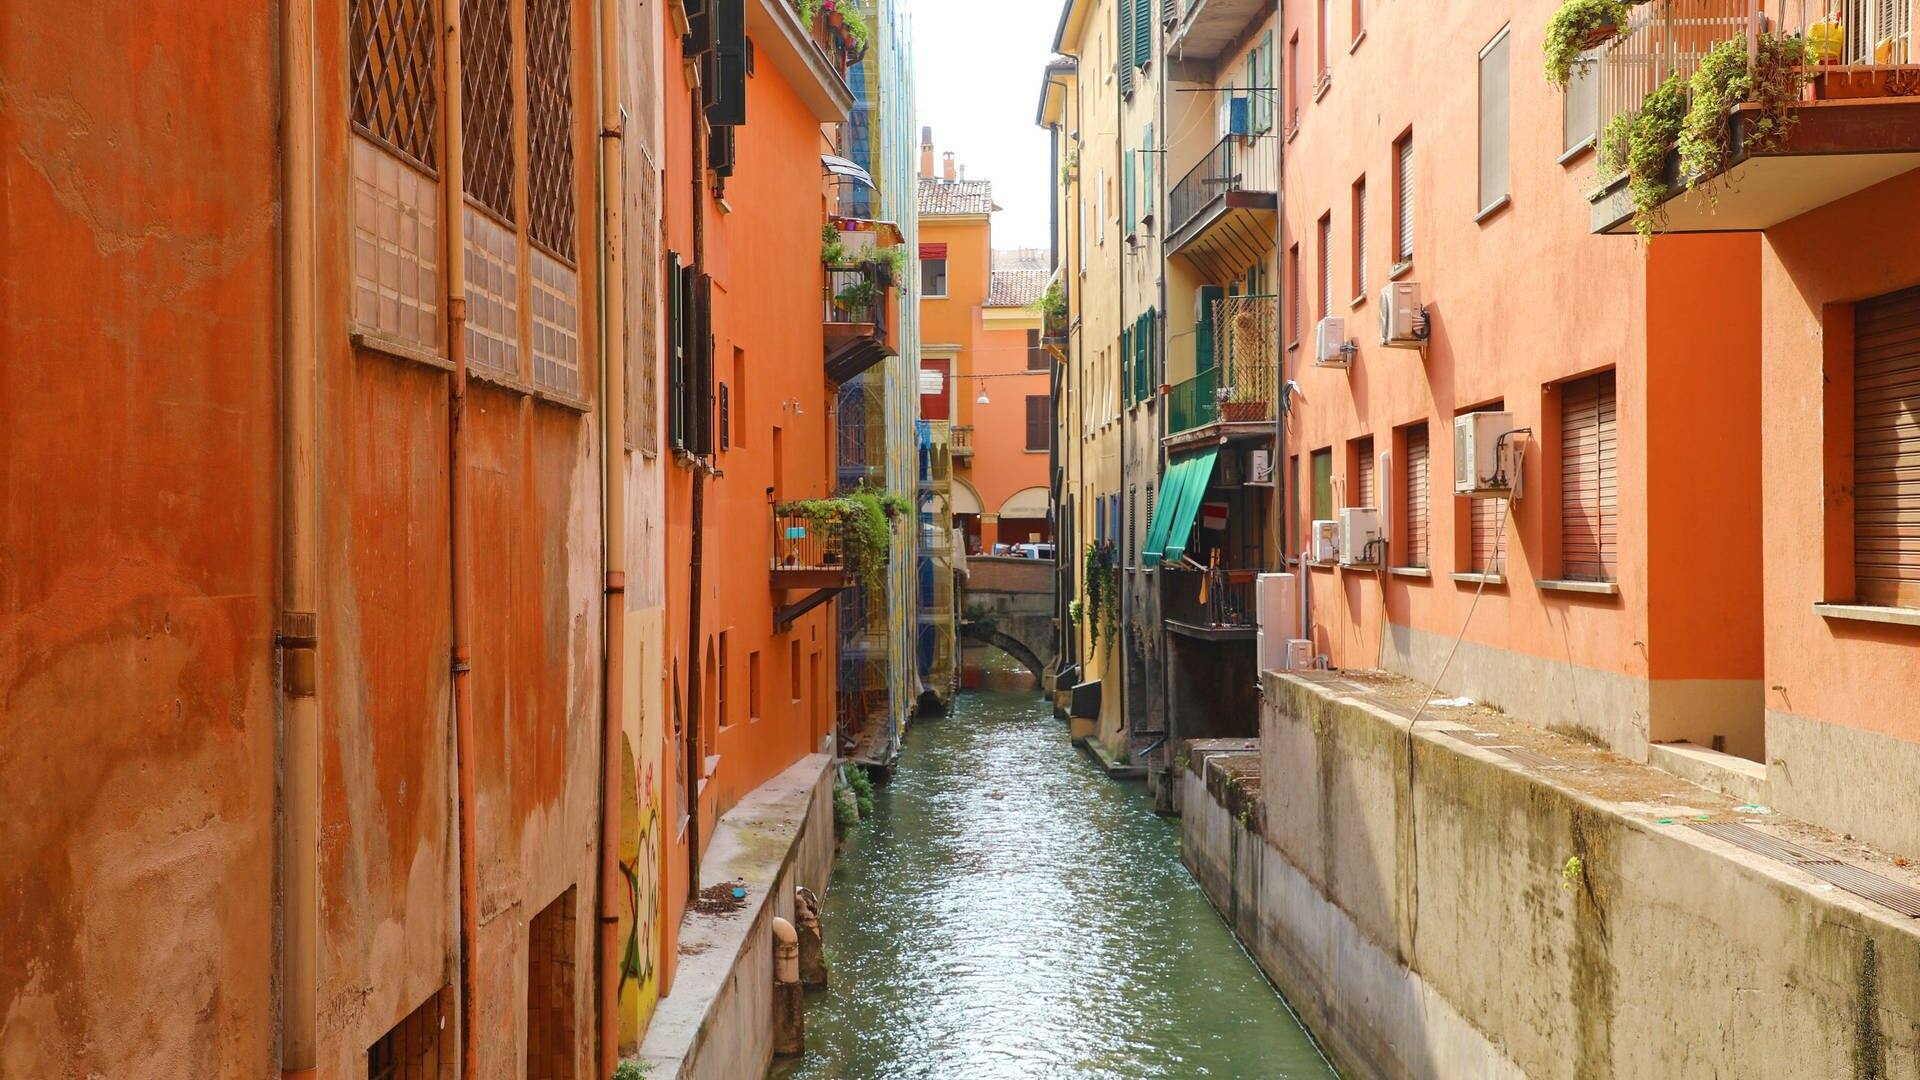 Italien-Städtetrip mal anders: Kanäle fließen durch die Gassen der Stadt zwischen Häuserreihen mit kleinen Balkonen an vielen Wohnungen und schöner Altstadt. (Foto: IMAGO Panthermedia)